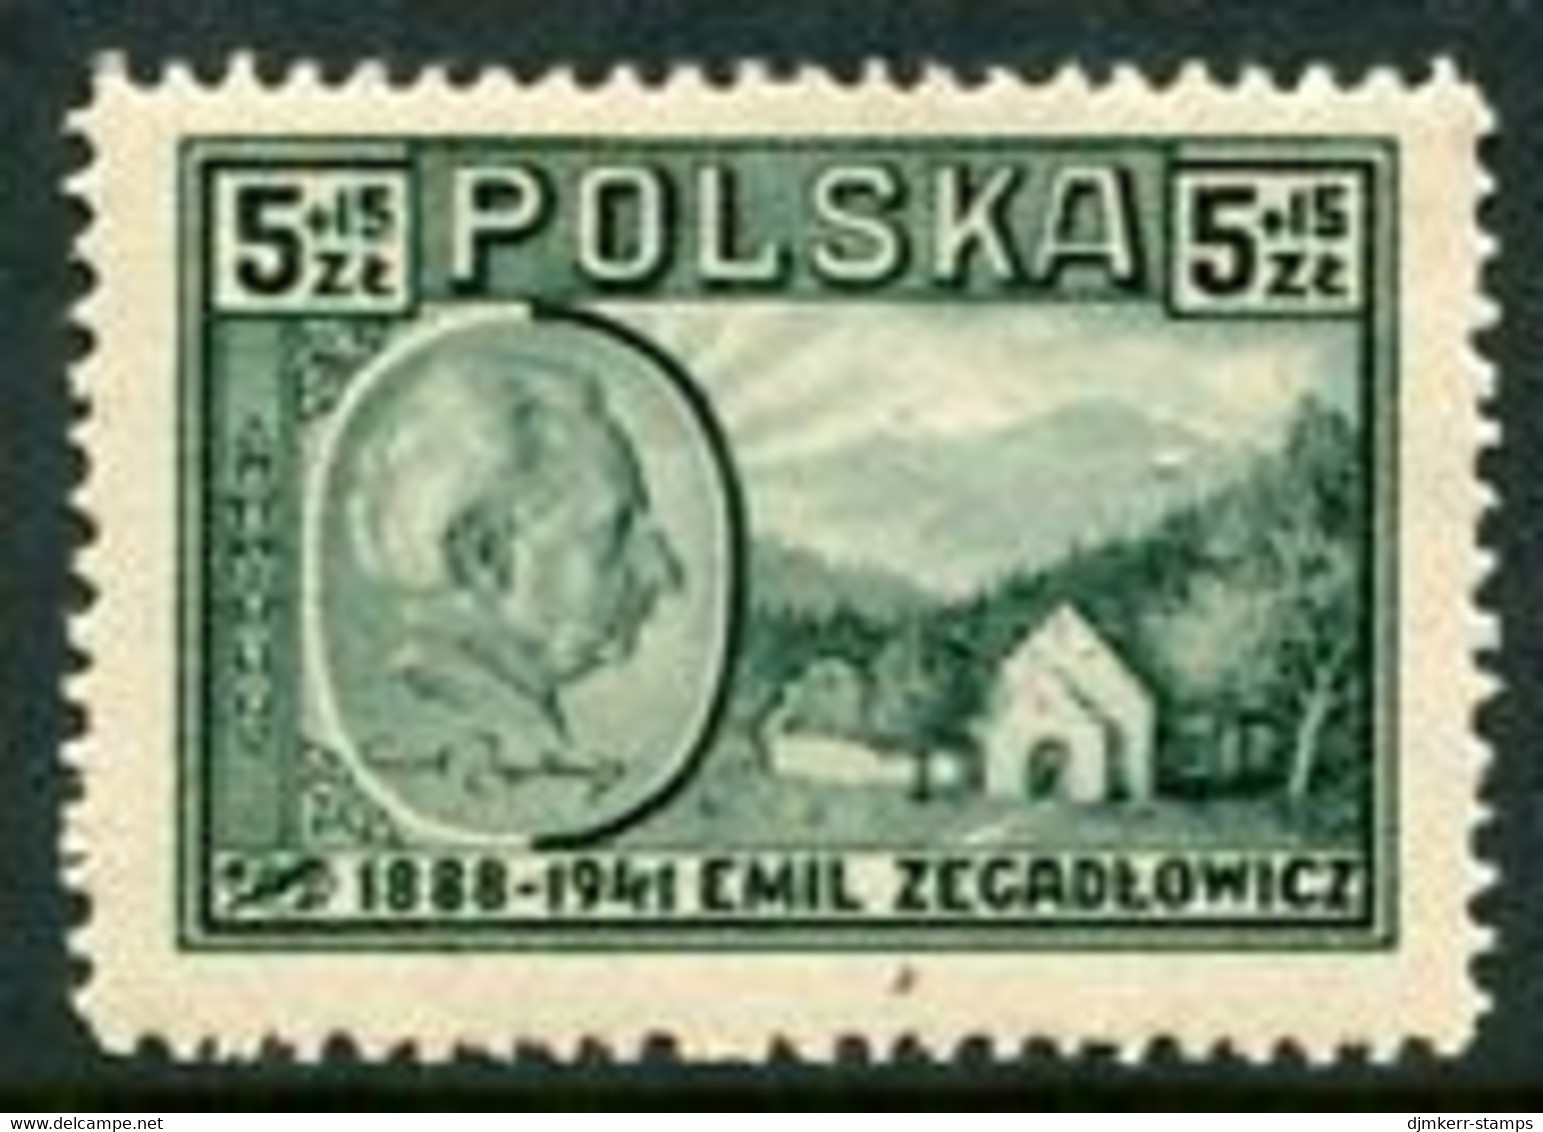 POLAND 1947 Zegadlowicz LHM / *.  Michel 453 - Nuovi